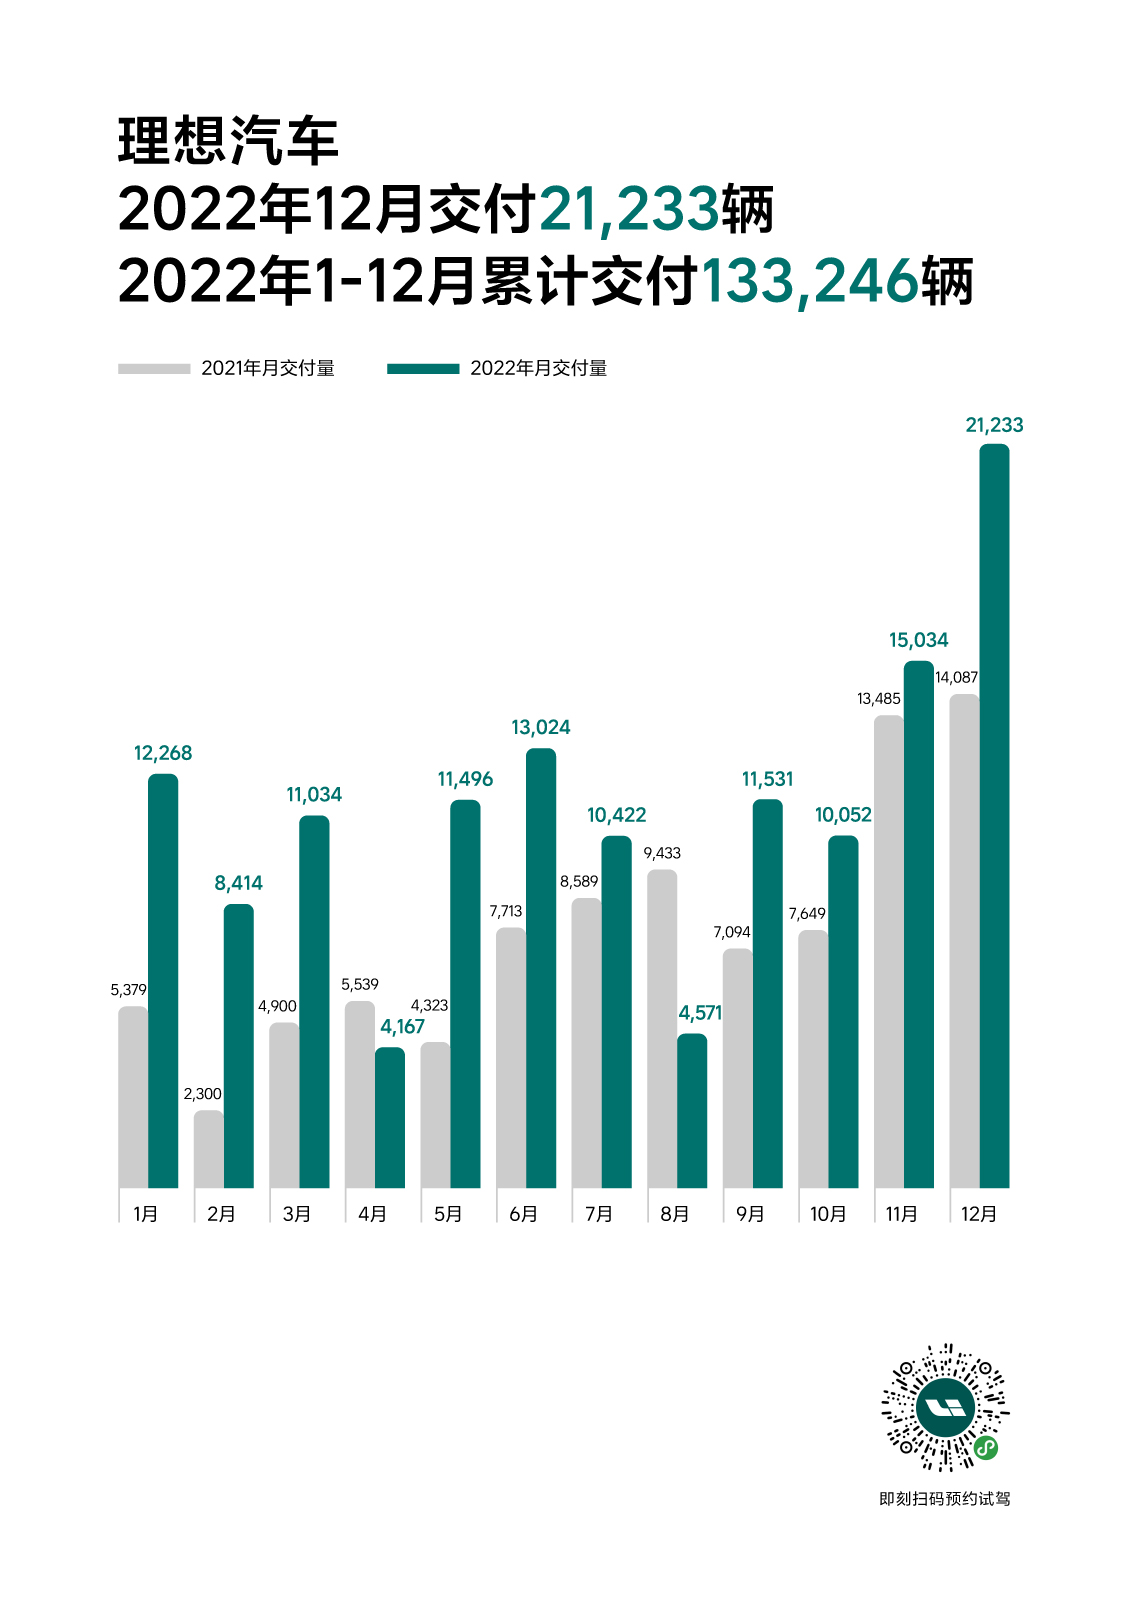 2022 12月官方发媒体销量图_1201_公关.jpg